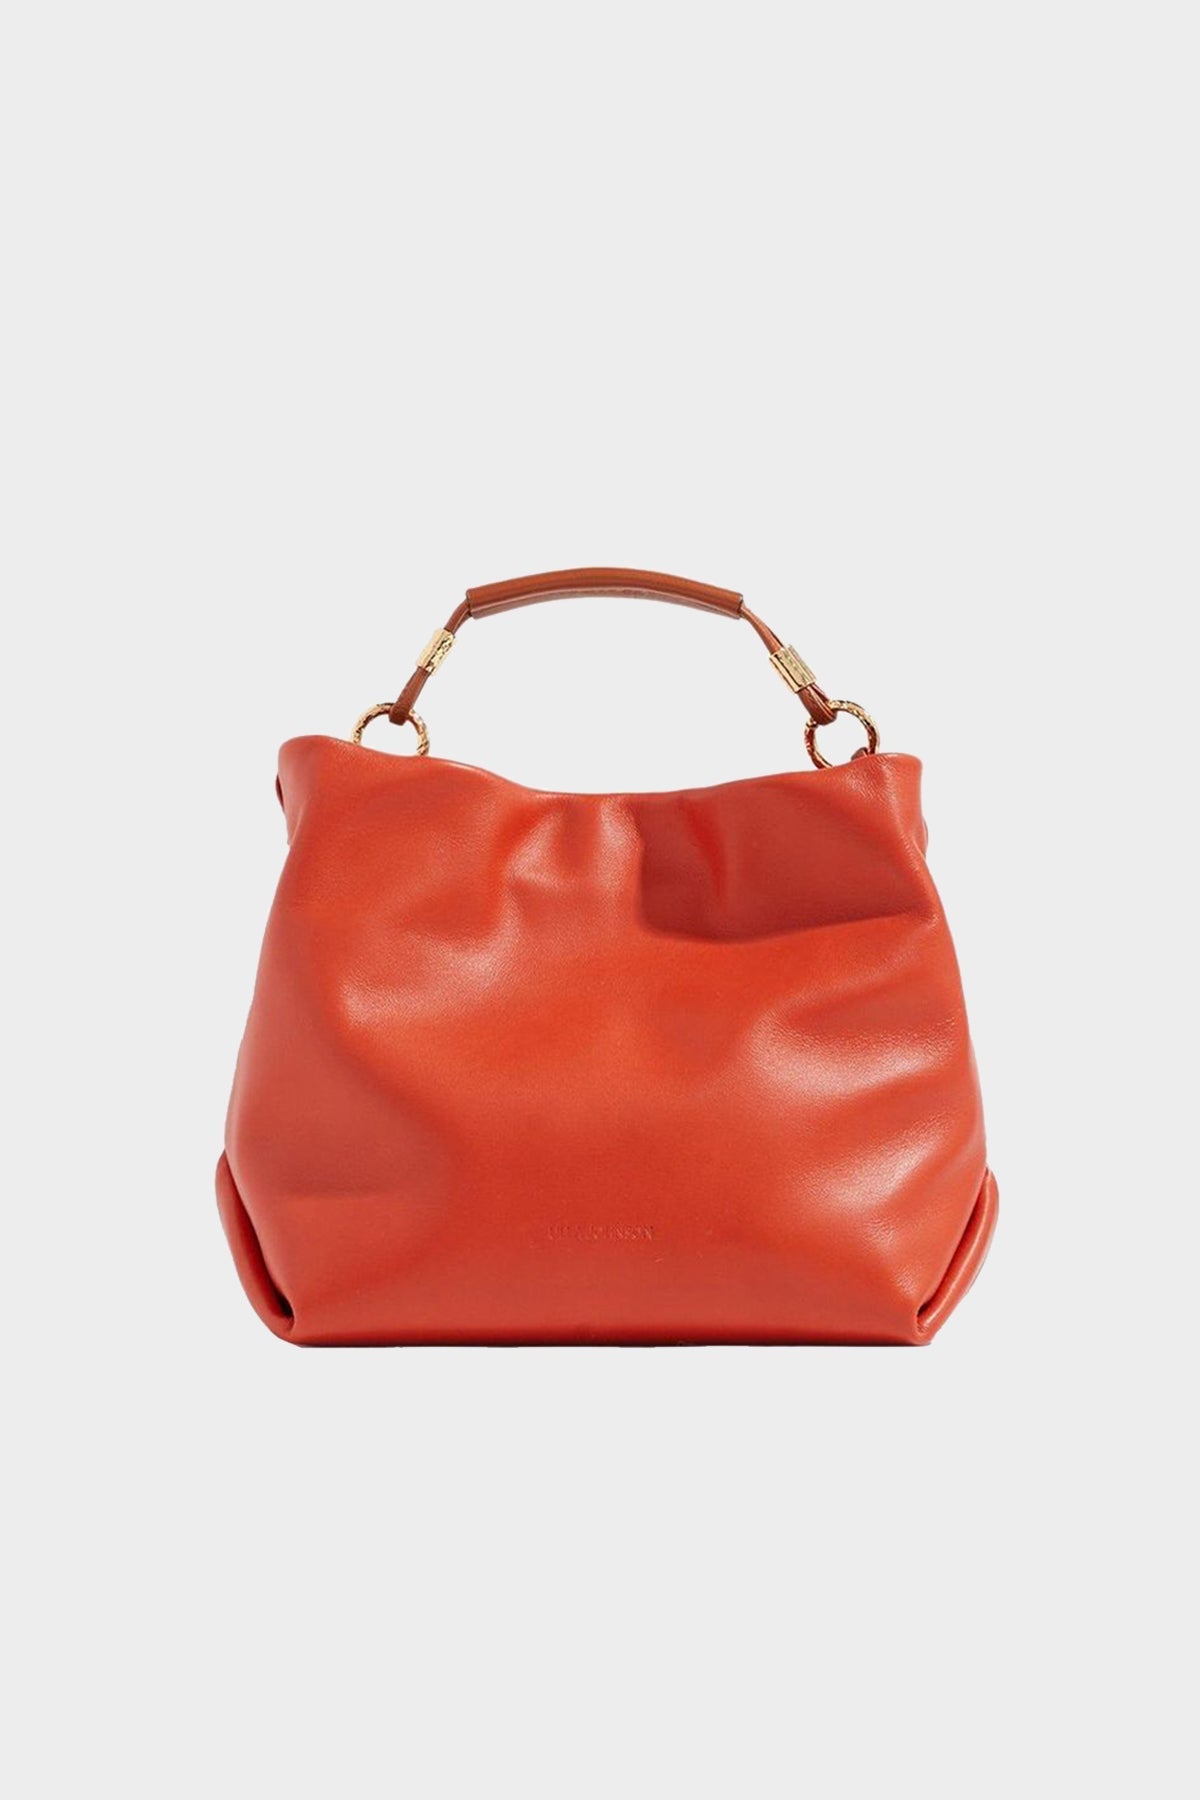 Remy Mini Handbag in Chili Coloblock - shop-olivia.com